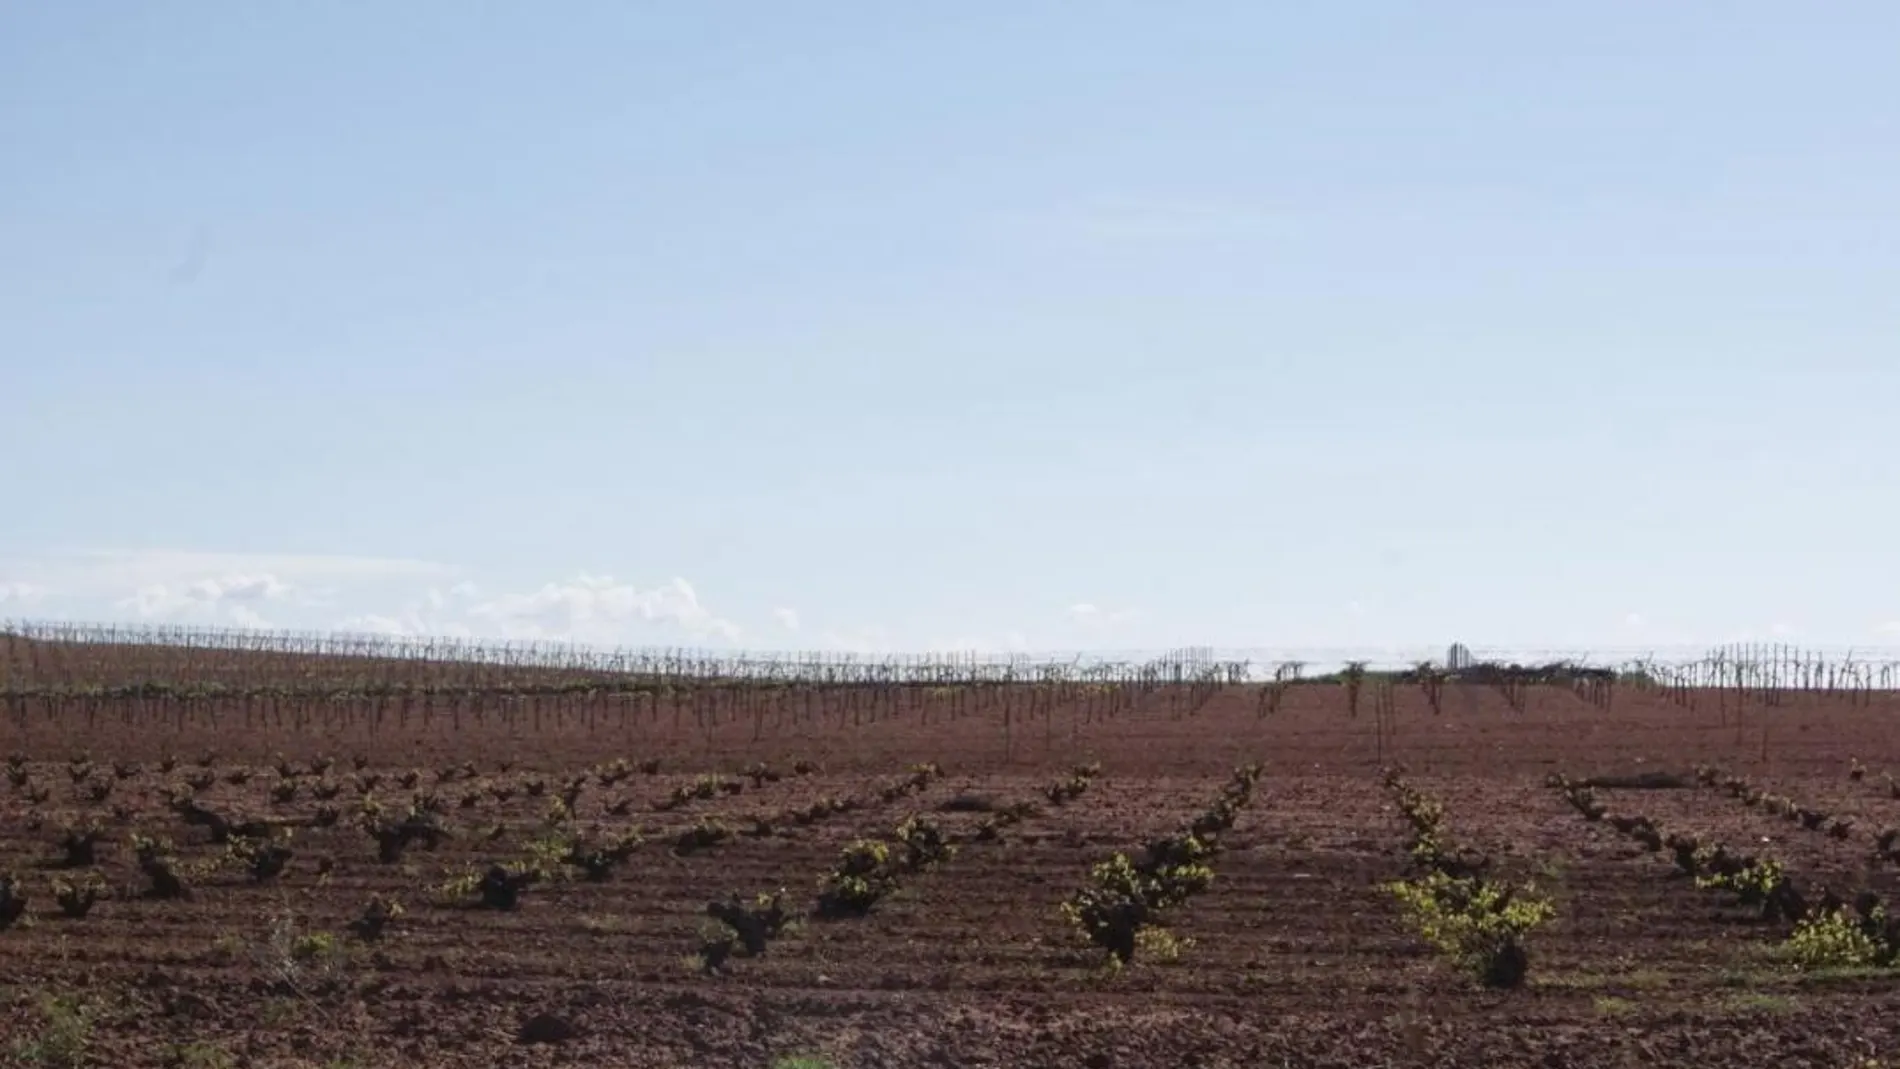 Los campos murcianos sufren un déficit estructural de agua que reduce considerablemente su rentabilidad (LA RAZÓN)